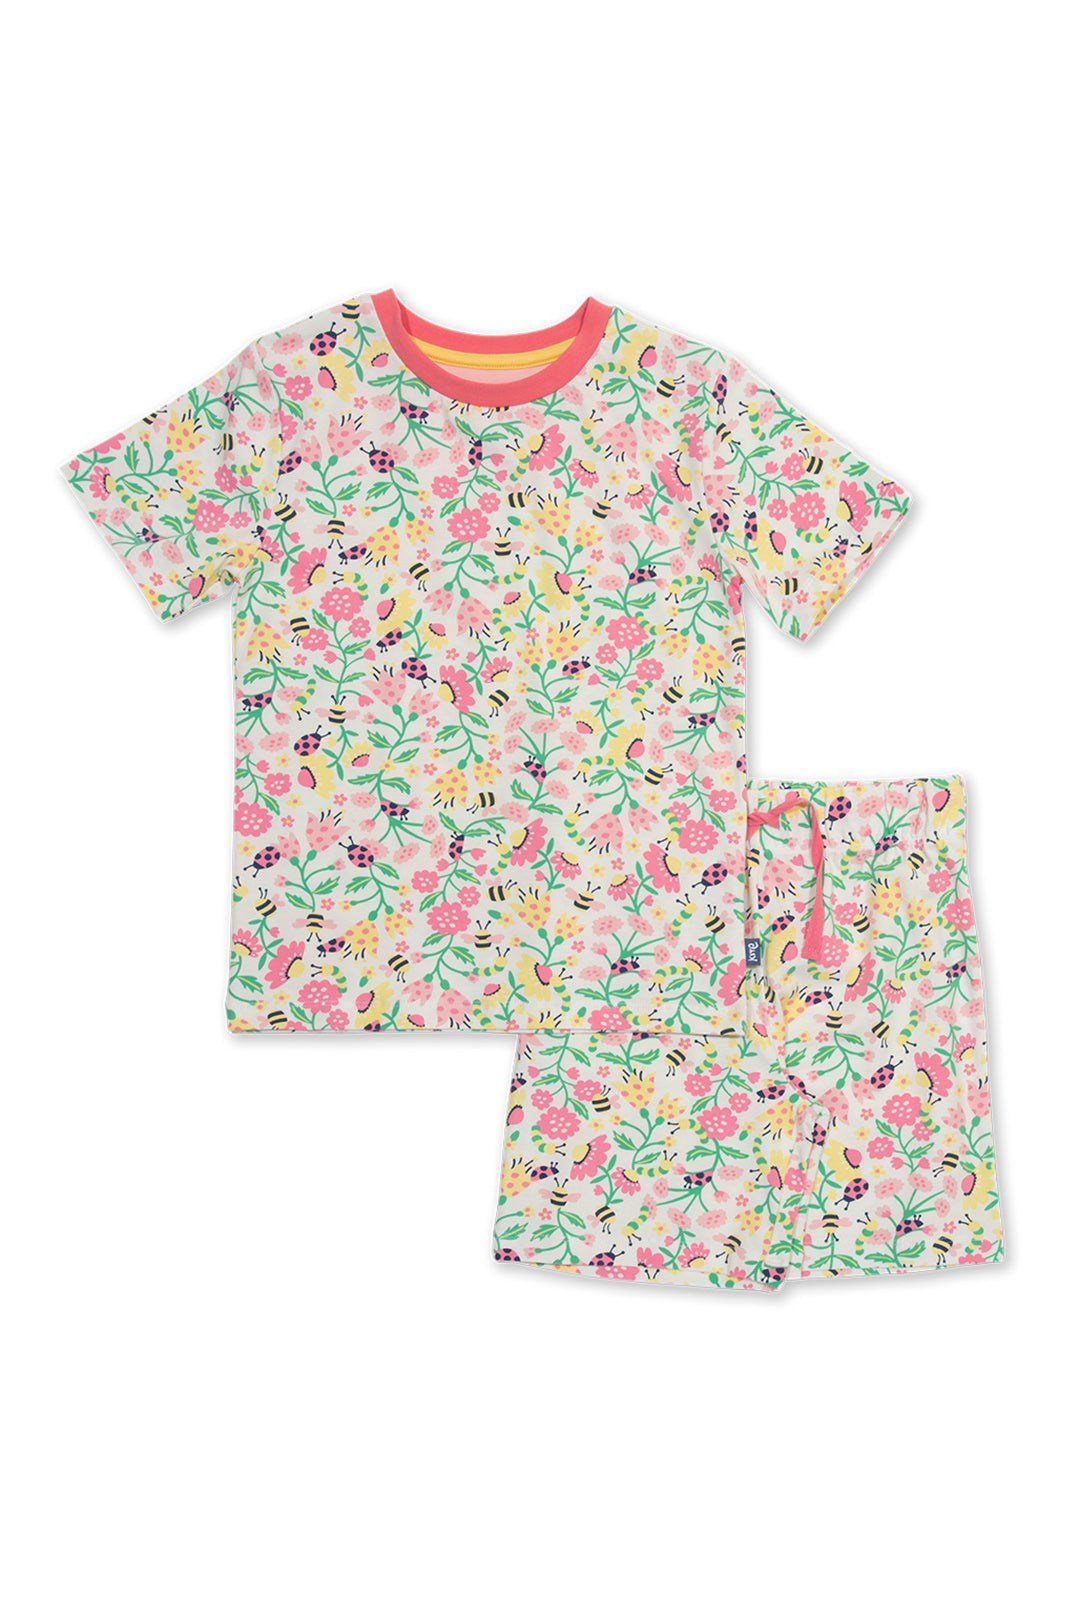 Baby/Kids Organic Cotton Pyjamas -